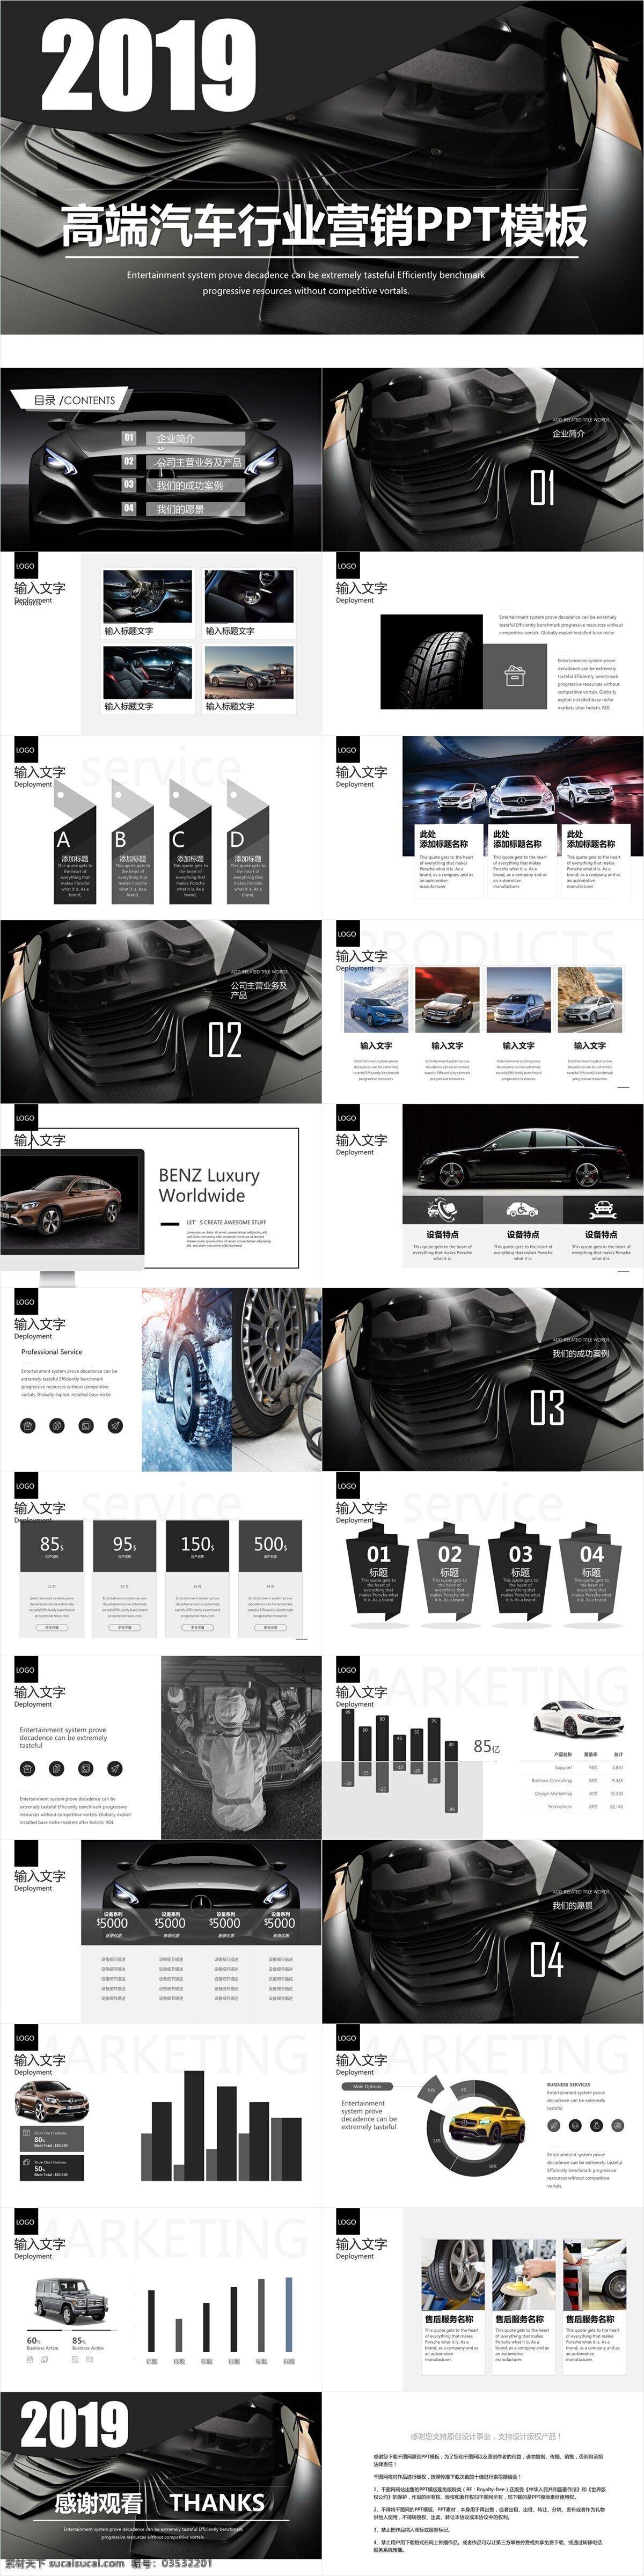 高端 汽车行业 营销 模板 创意 企业宣传 企业简介 科技风 产品介绍 商务合作